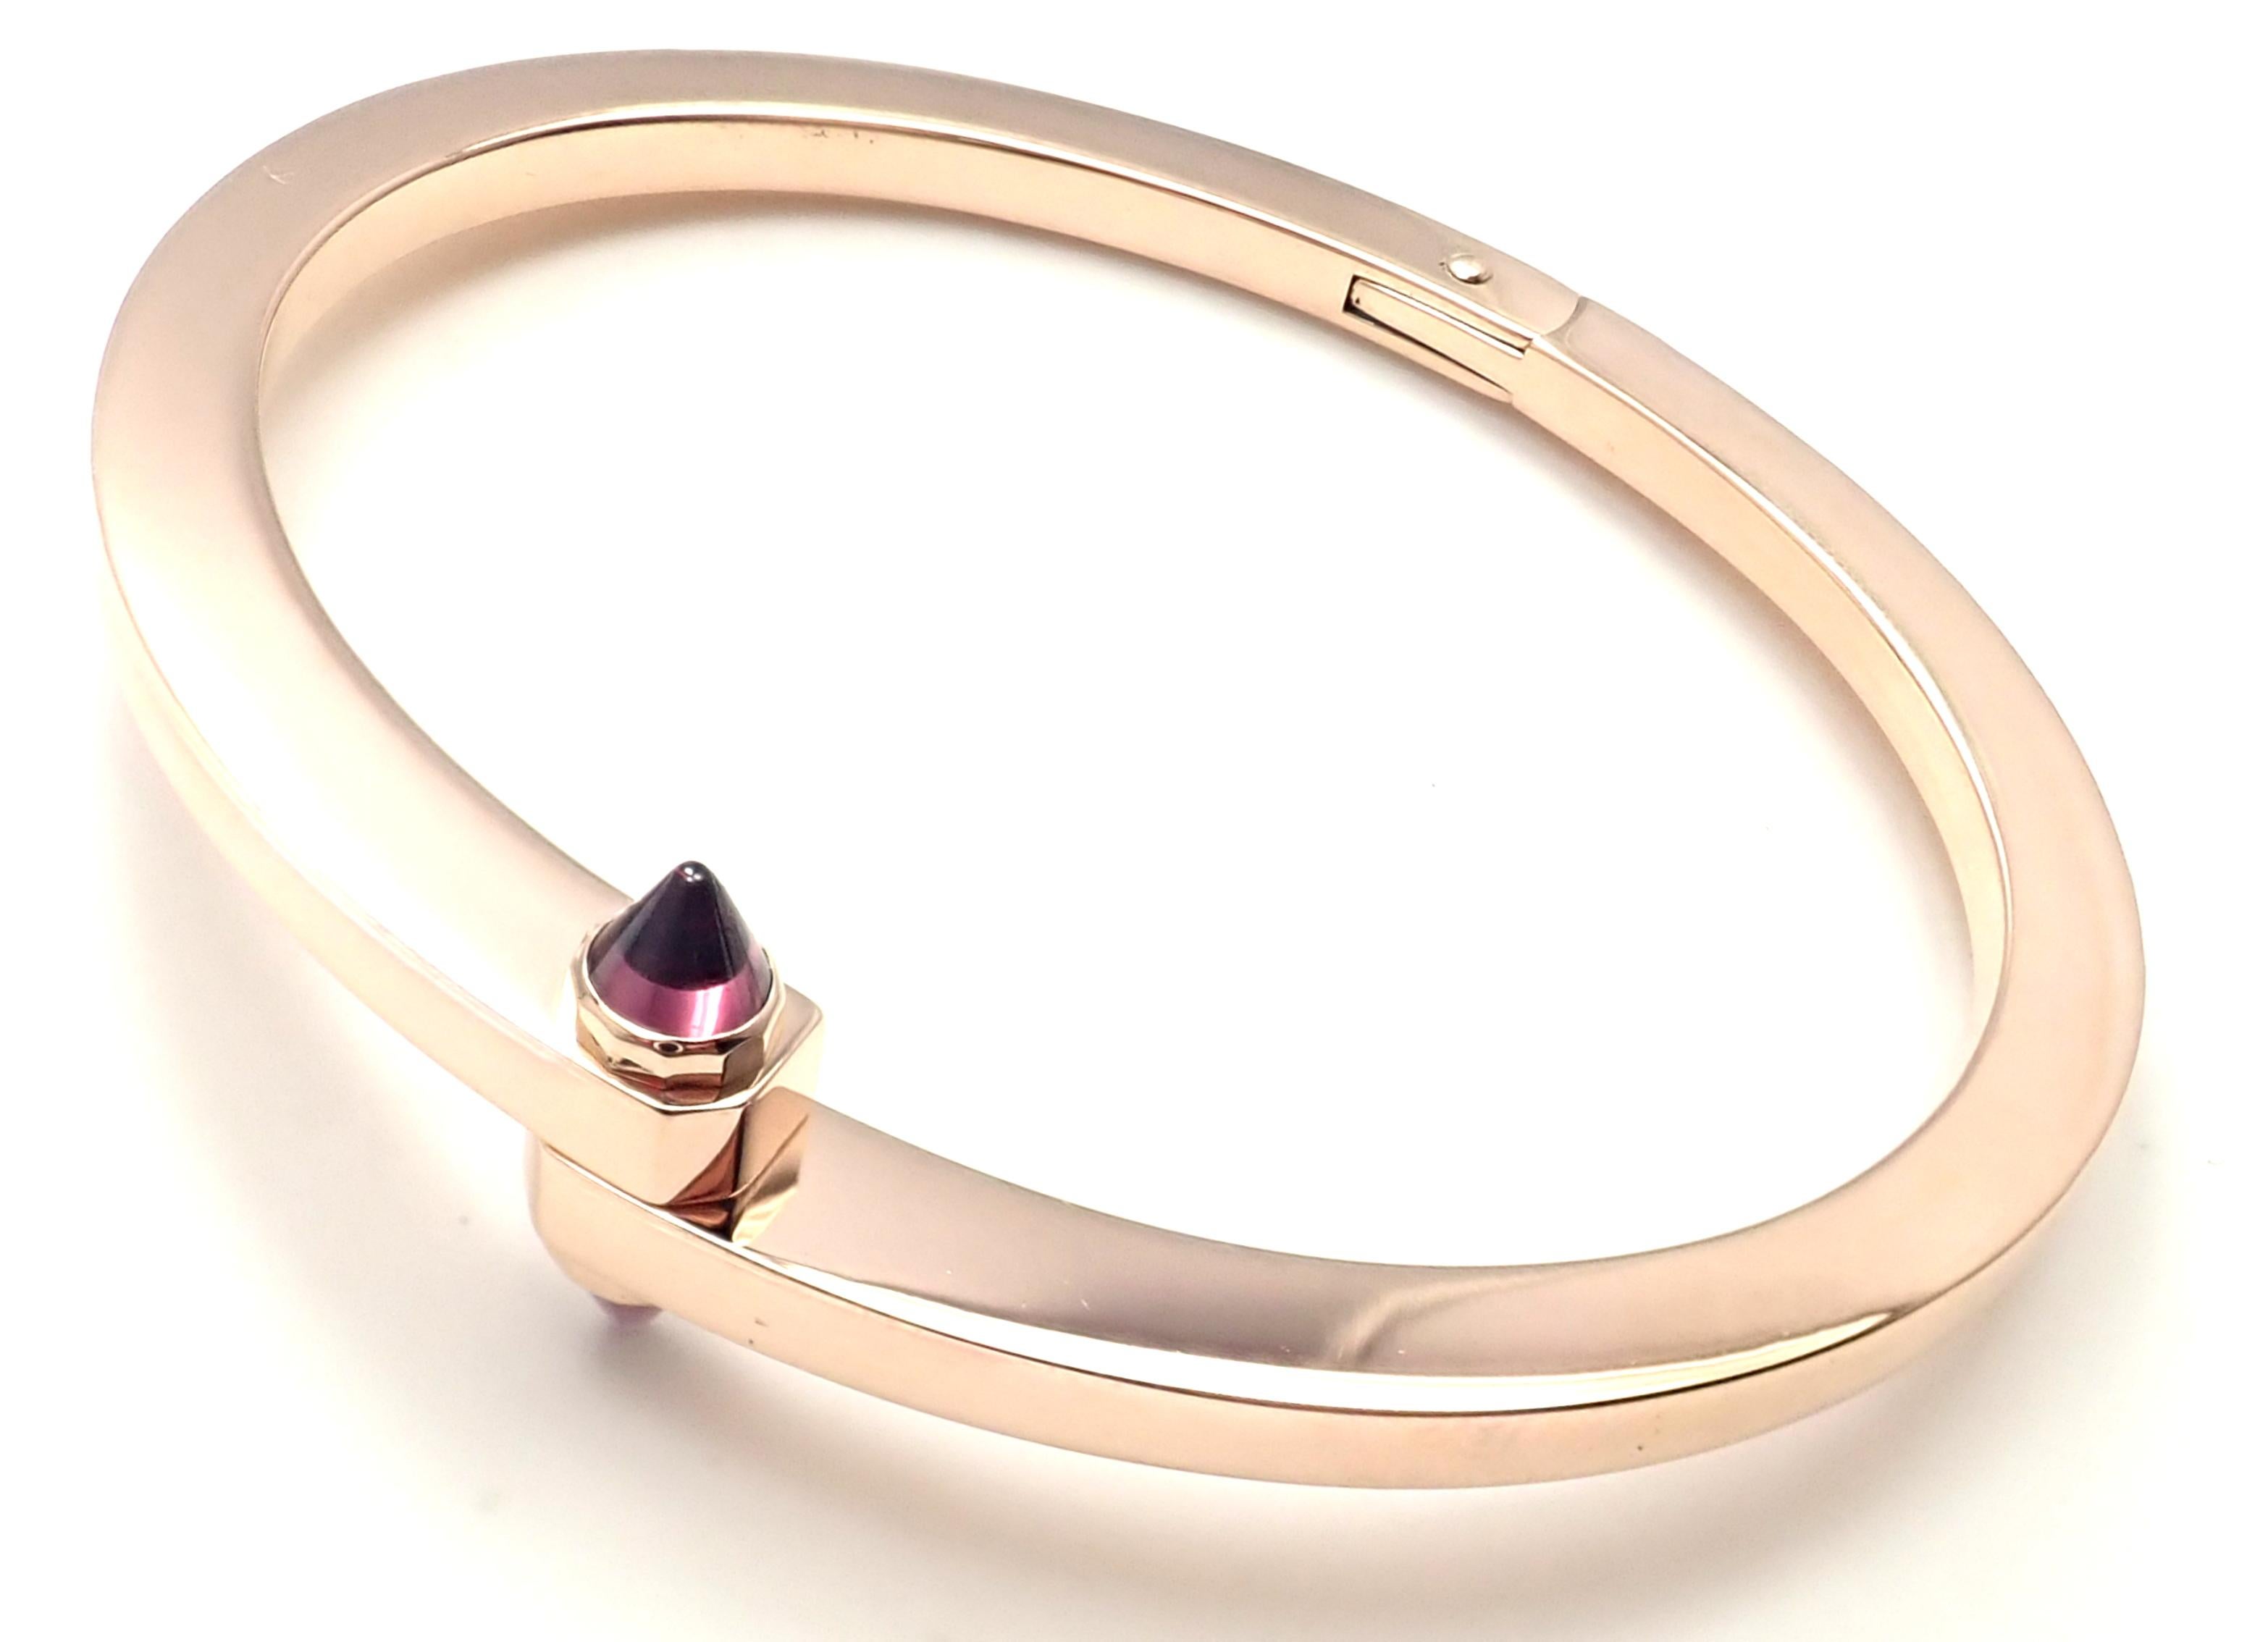  Bracelet Cartier Menotte en or rose et grenat Unisexe 